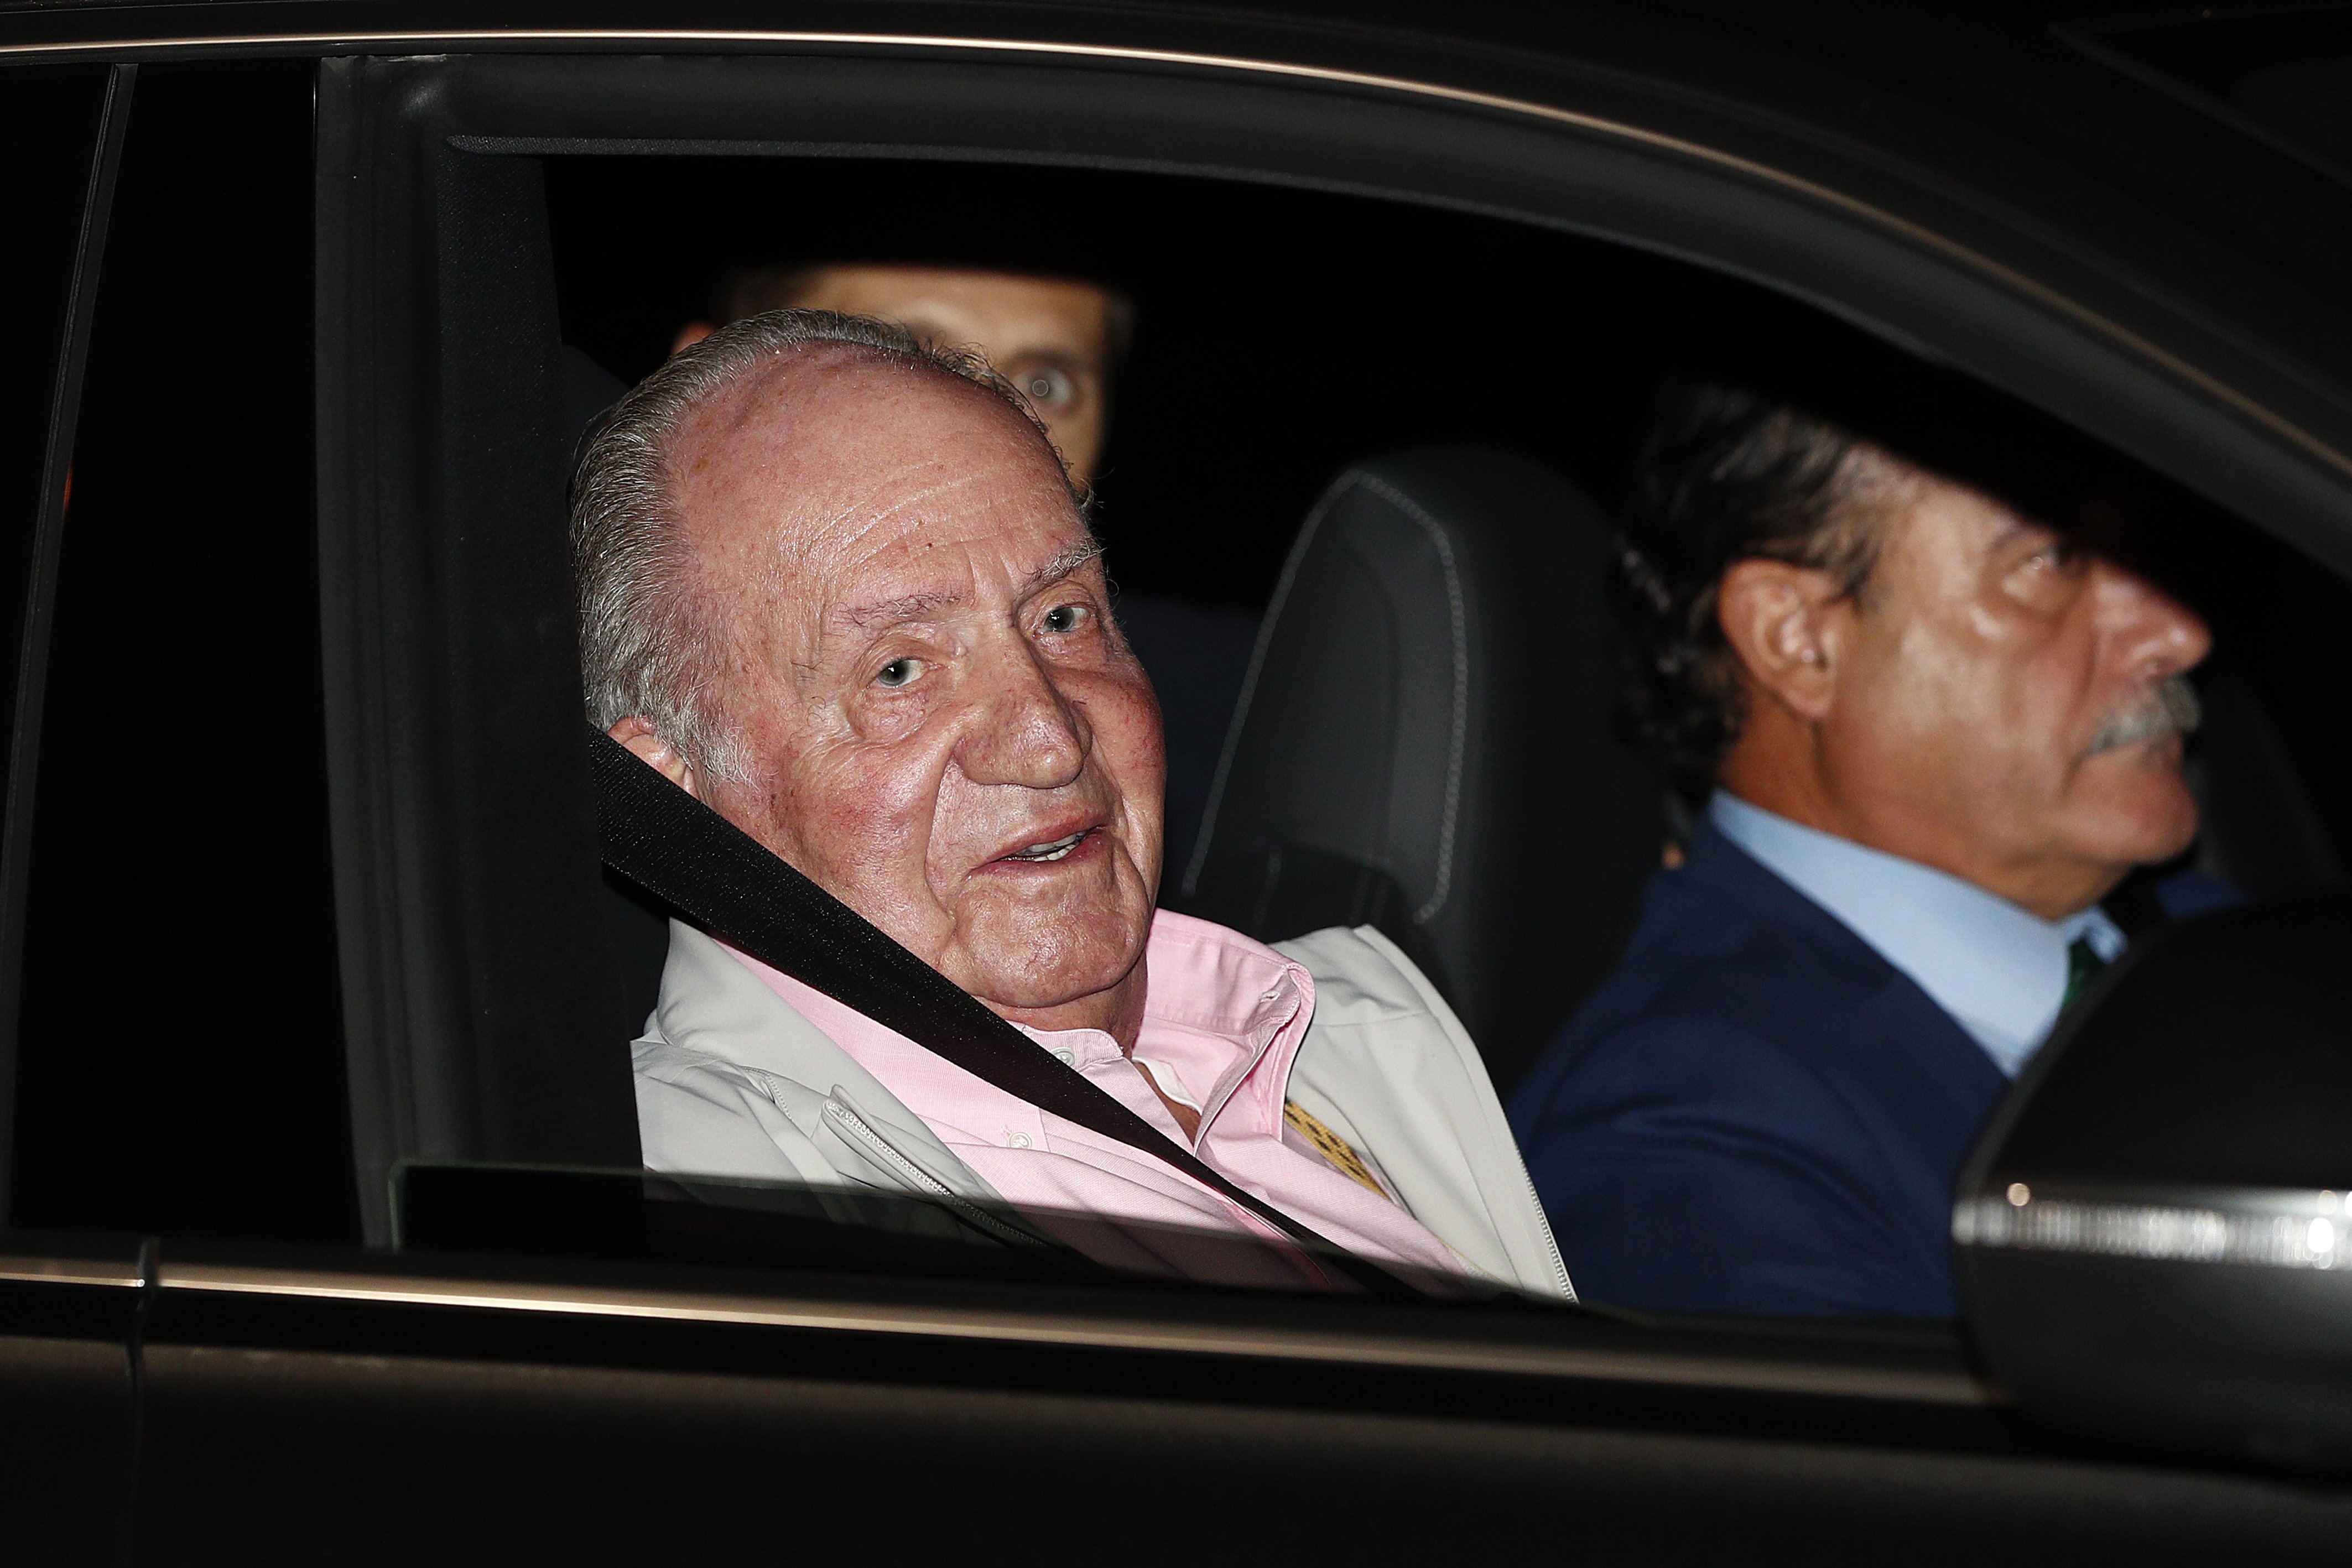 Salen los íntimos de Juan Carlos: así está él y hablan de "bomba de relojería"